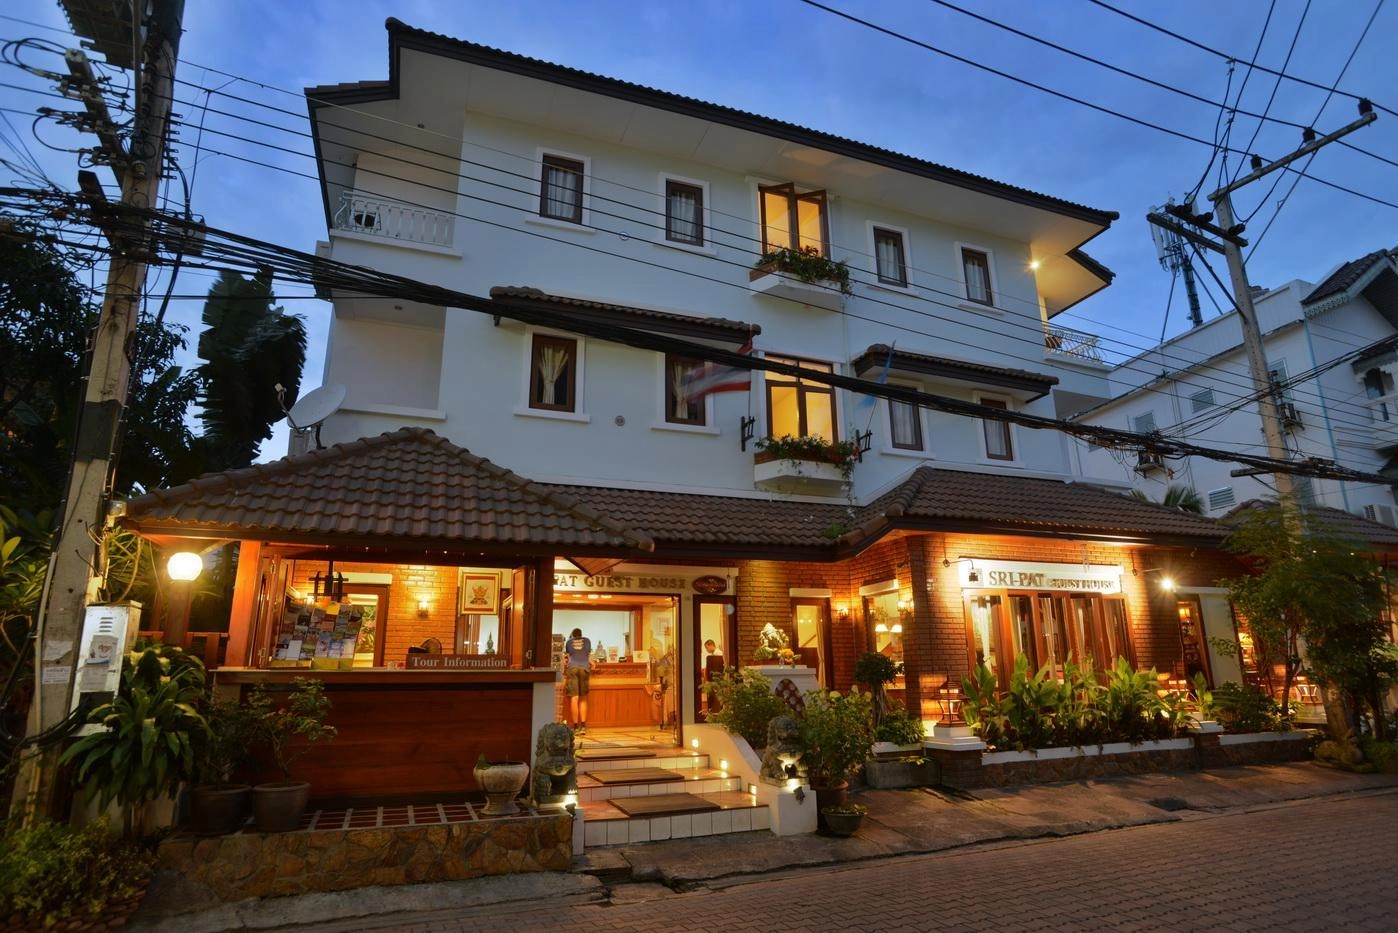 Какой тип недвижимости выбрать для проживания в Таиланде туристам